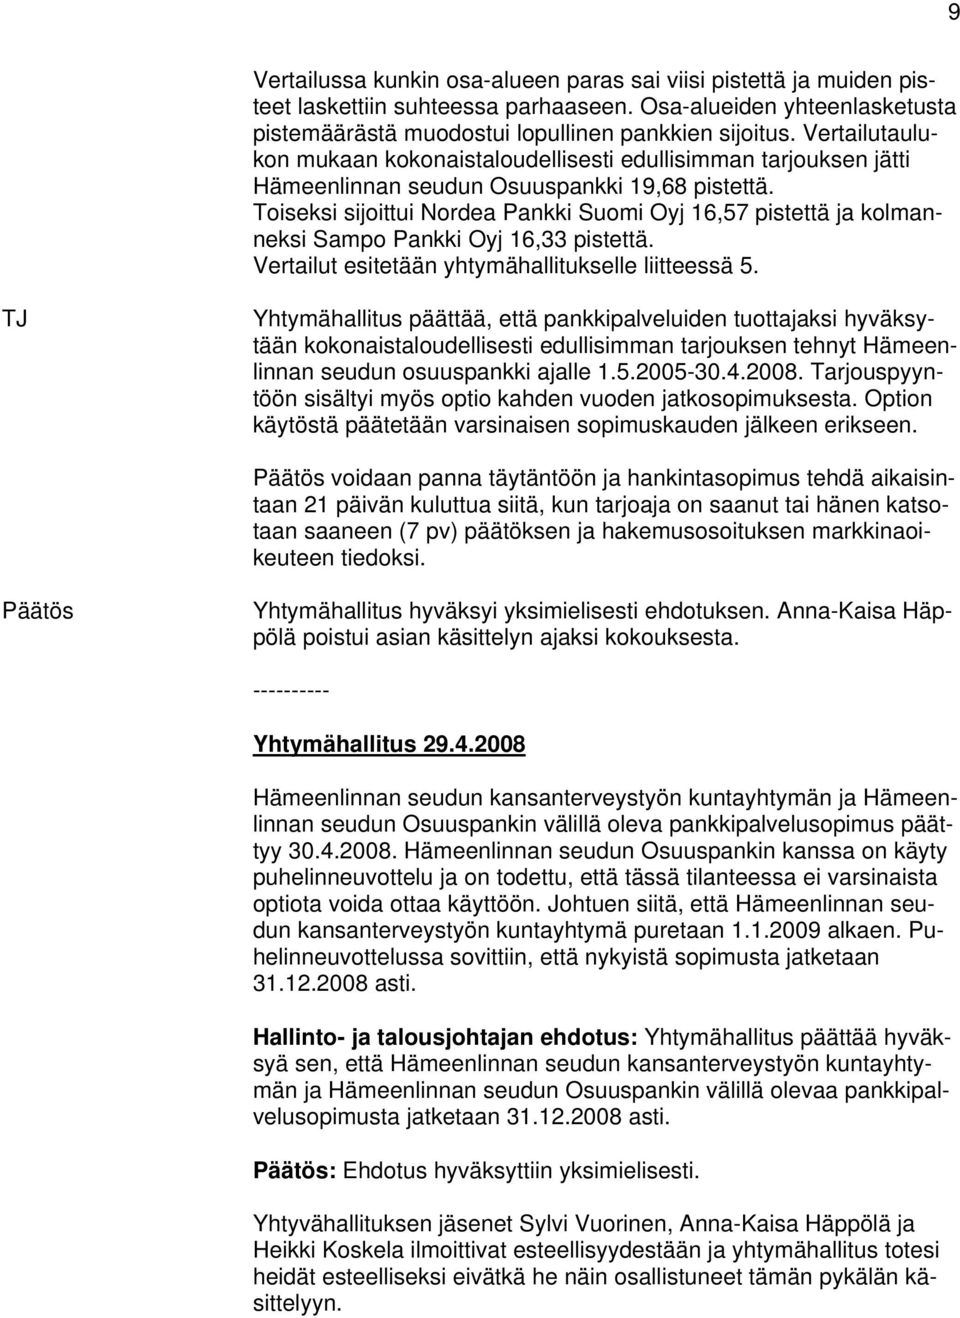 Toiseksi sijoittui Nordea Pankki Suomi Oyj 16,57 pistettä ja kolmanneksi Sampo Pankki Oyj 16,33 pistettä. Vertailut esitetään yhtymähallitukselle liitteessä 5.